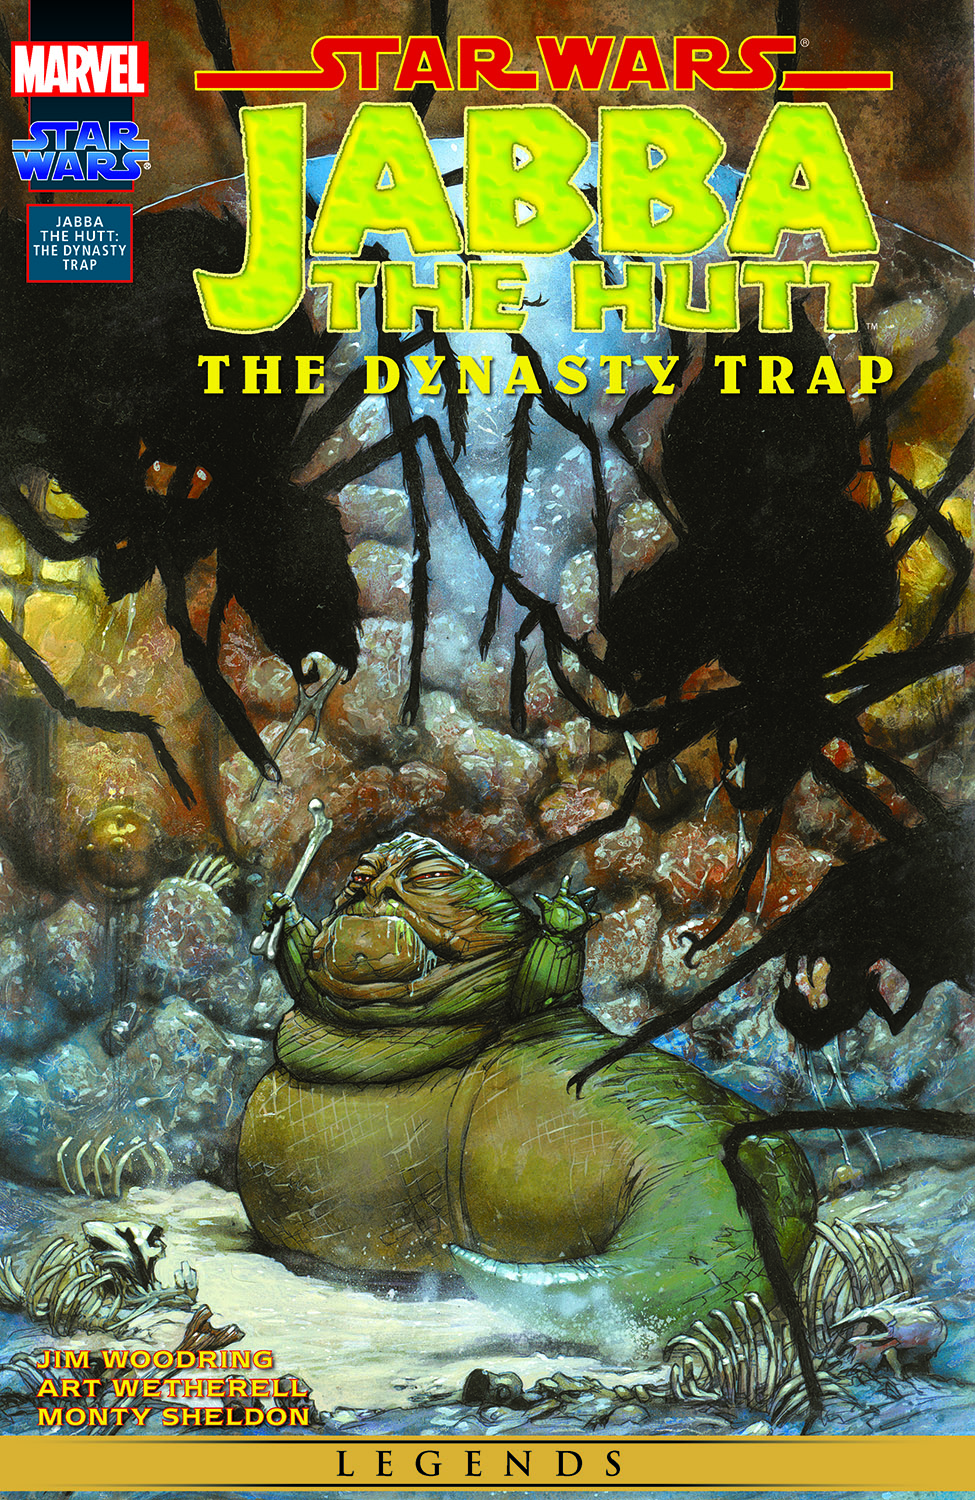 Jabba the hutt comic